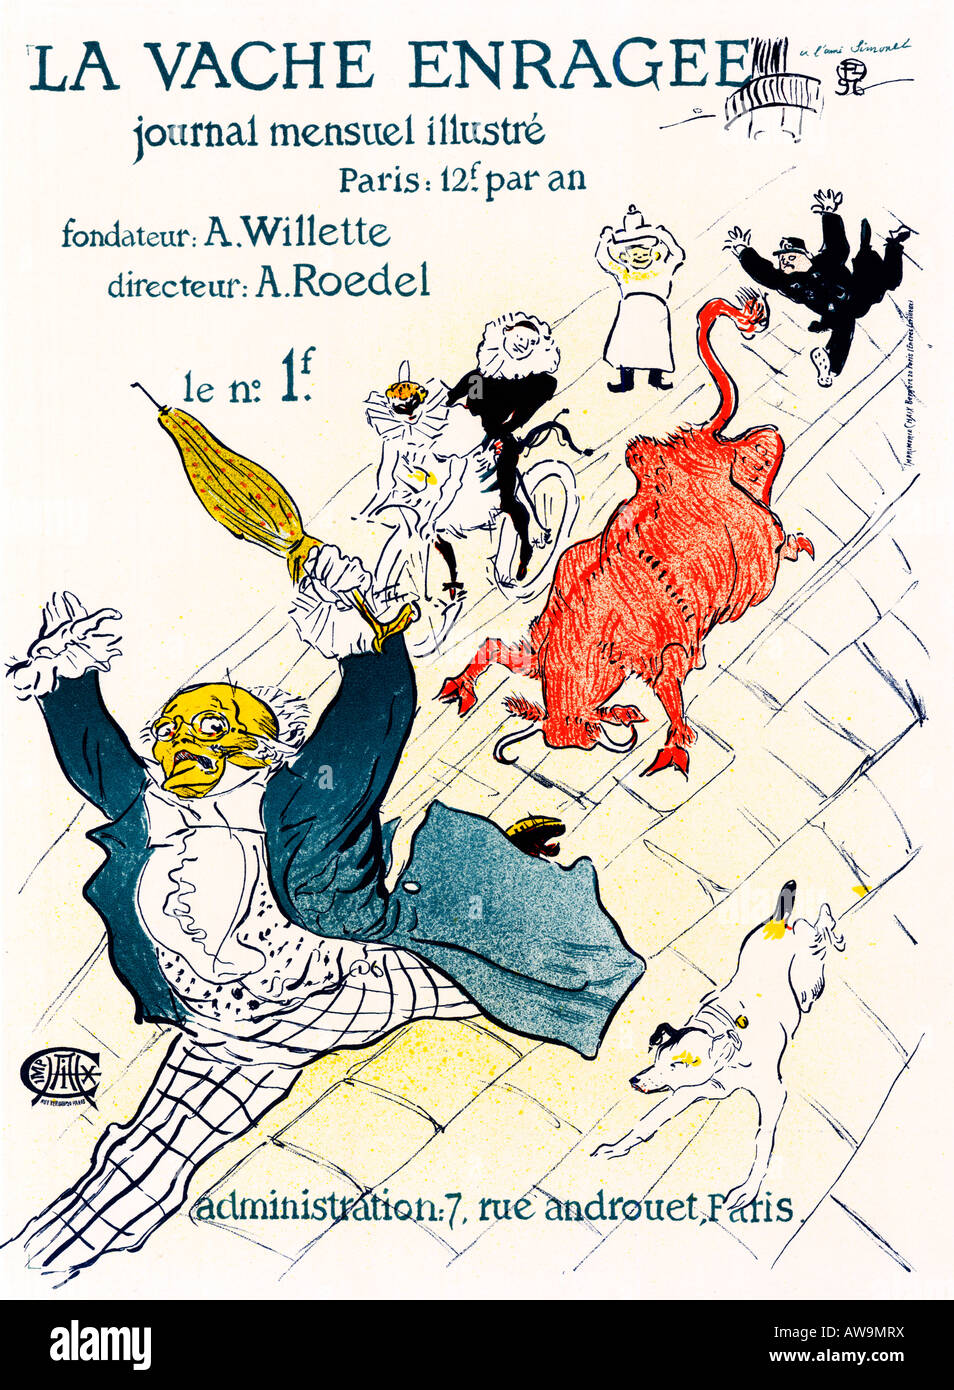 La Vache Enragee 1894 Jugendstil Poster von Toulouse-Lautrec illustrierte Monatszeitschrift von Adolphe Roedel Stockfoto